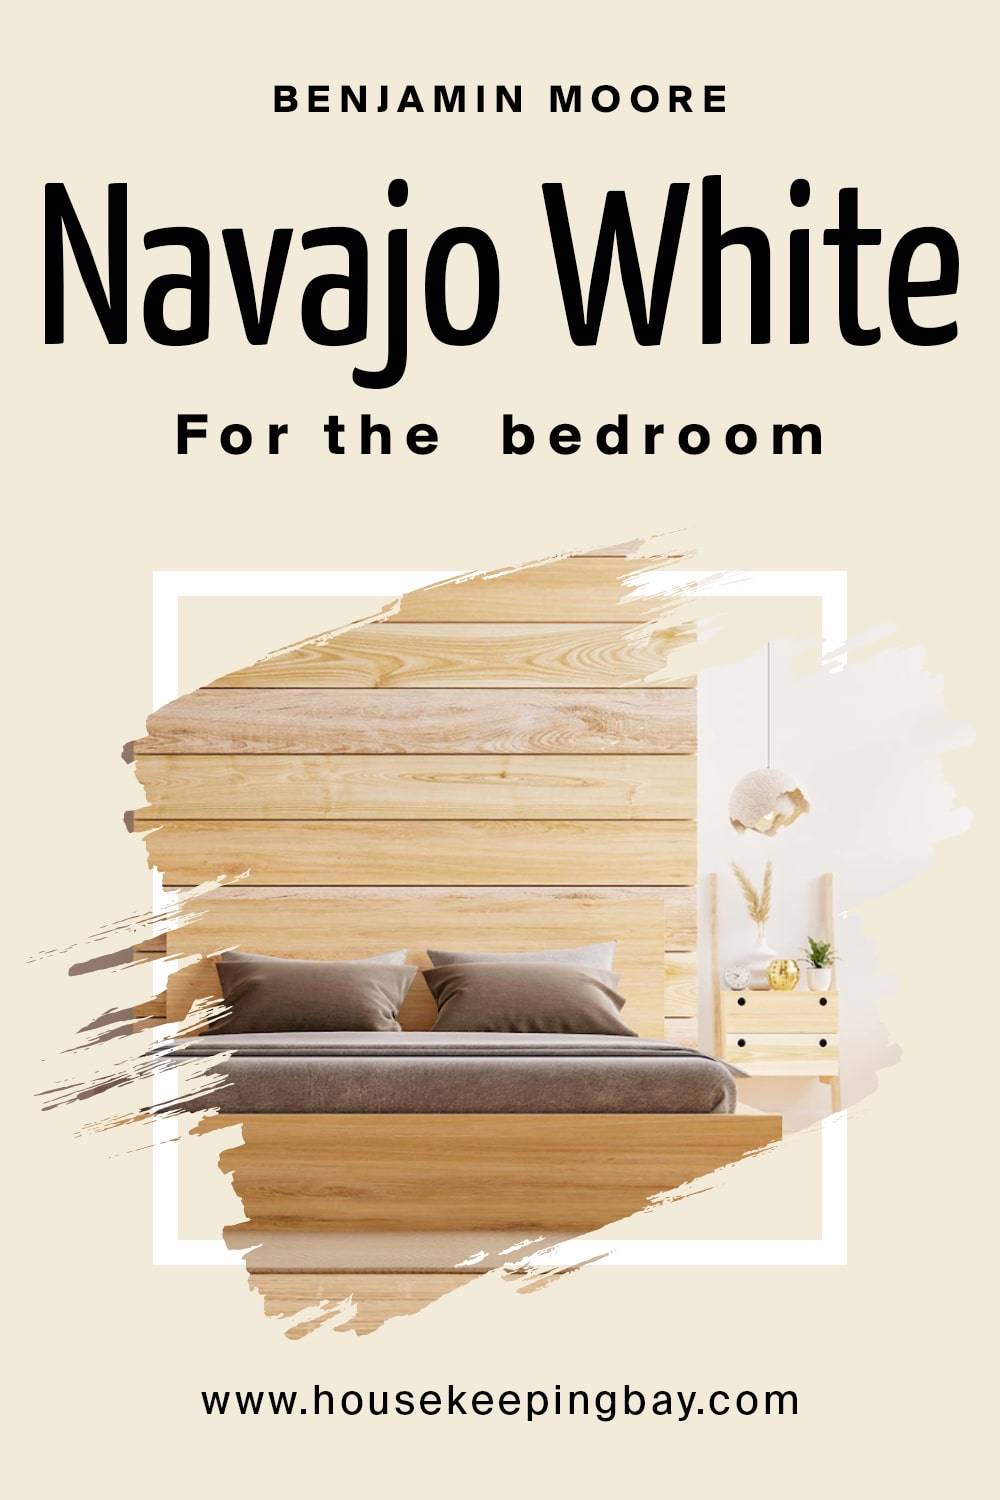 Benjamin Moore. Navajo White In the bedroom